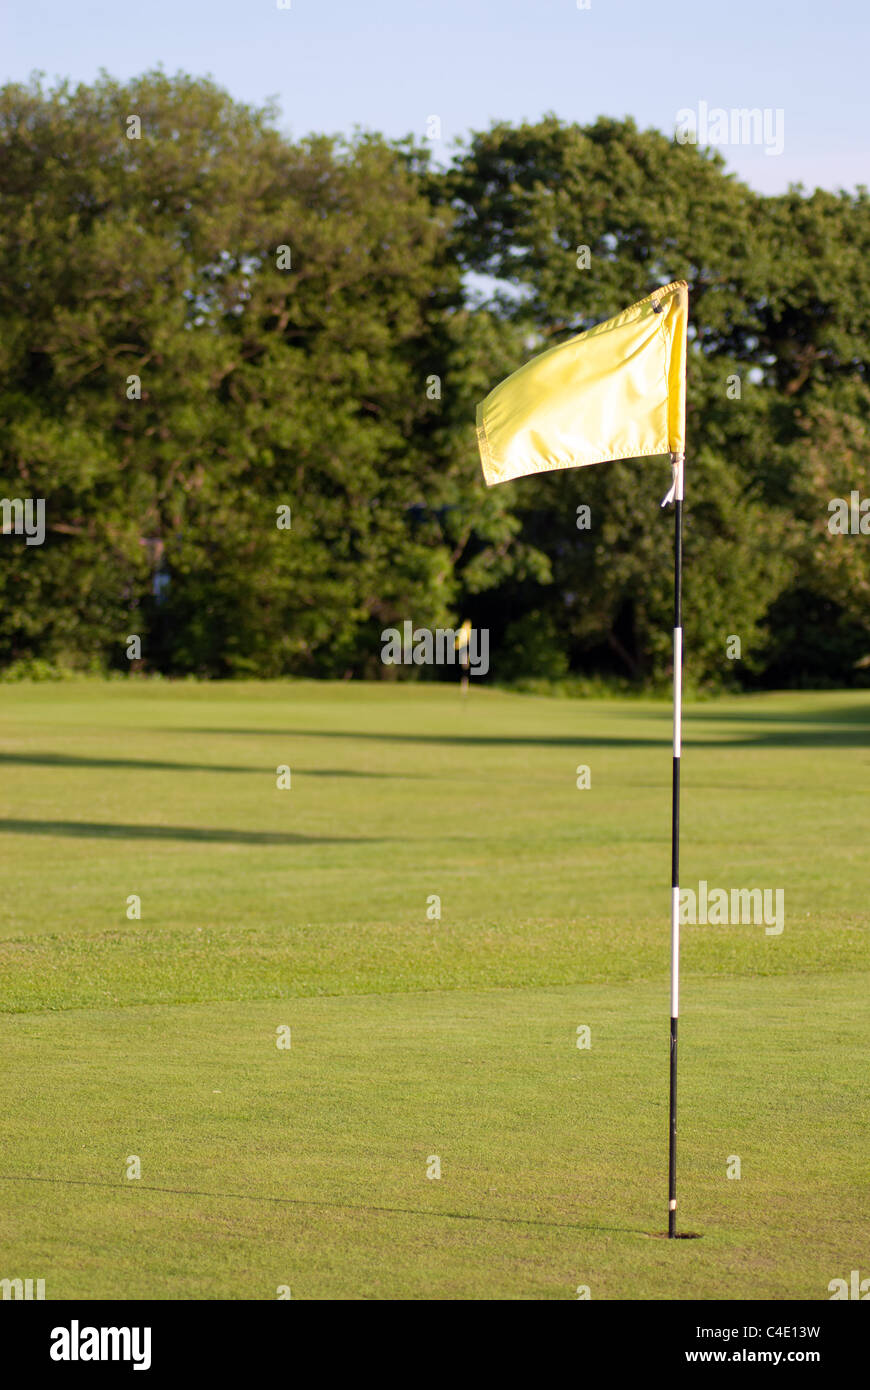 Golf-Fahne auf dem Grün auf einem Golfplatz Stockfoto